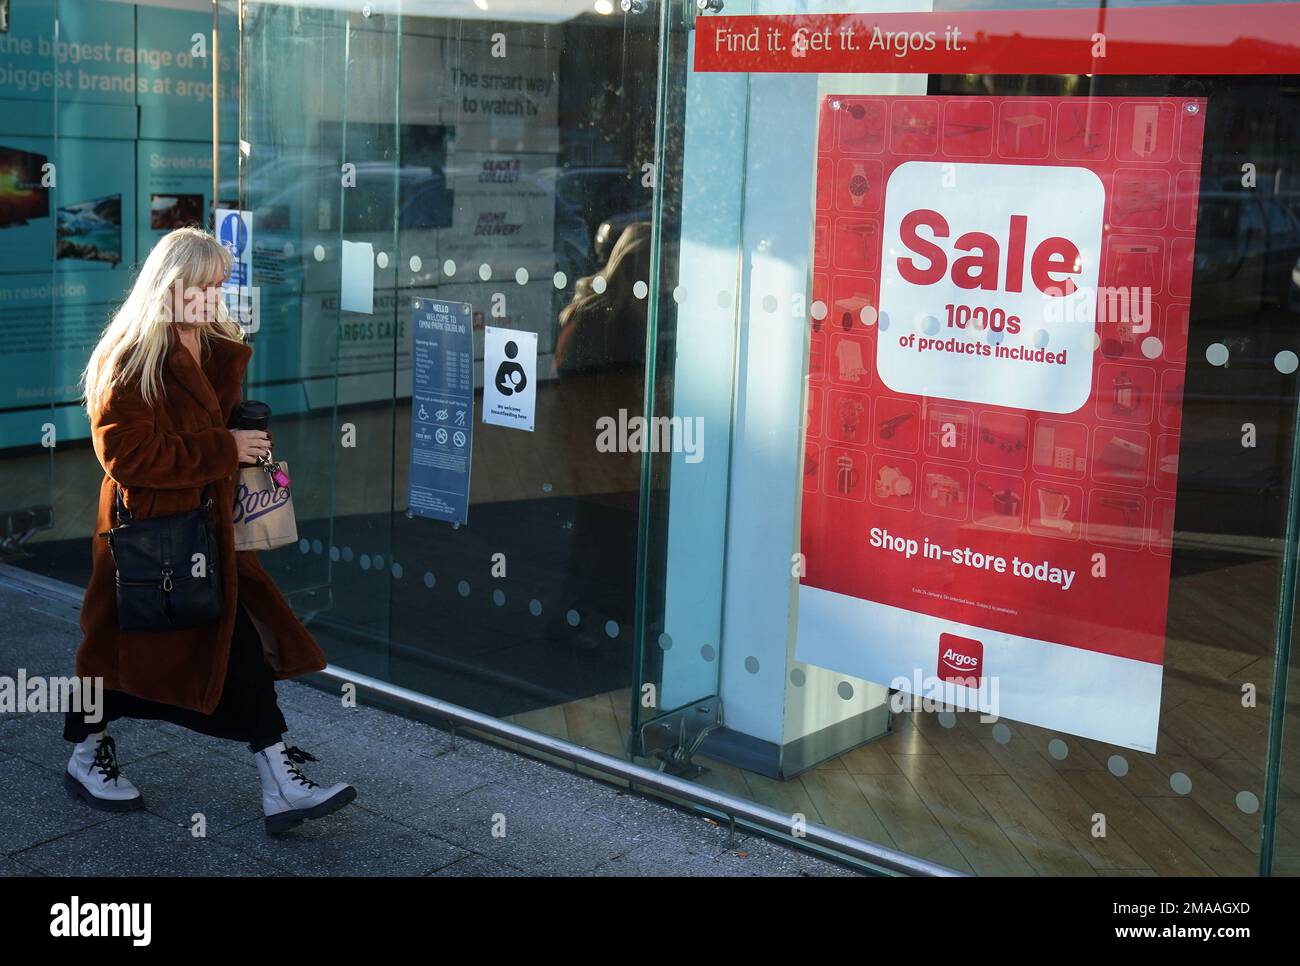 Un cartello di vendita nella finestra di un negozio Argos a Santry, Dublino. Argos ha annunciato piani per chiudere tutti i suoi negozi nella Repubblica d'Irlanda entro questa estate, una mossa che vedrà centinaia di posti di lavoro assestati. Data immagine: Giovedì 19 gennaio 2023. Foto Stock